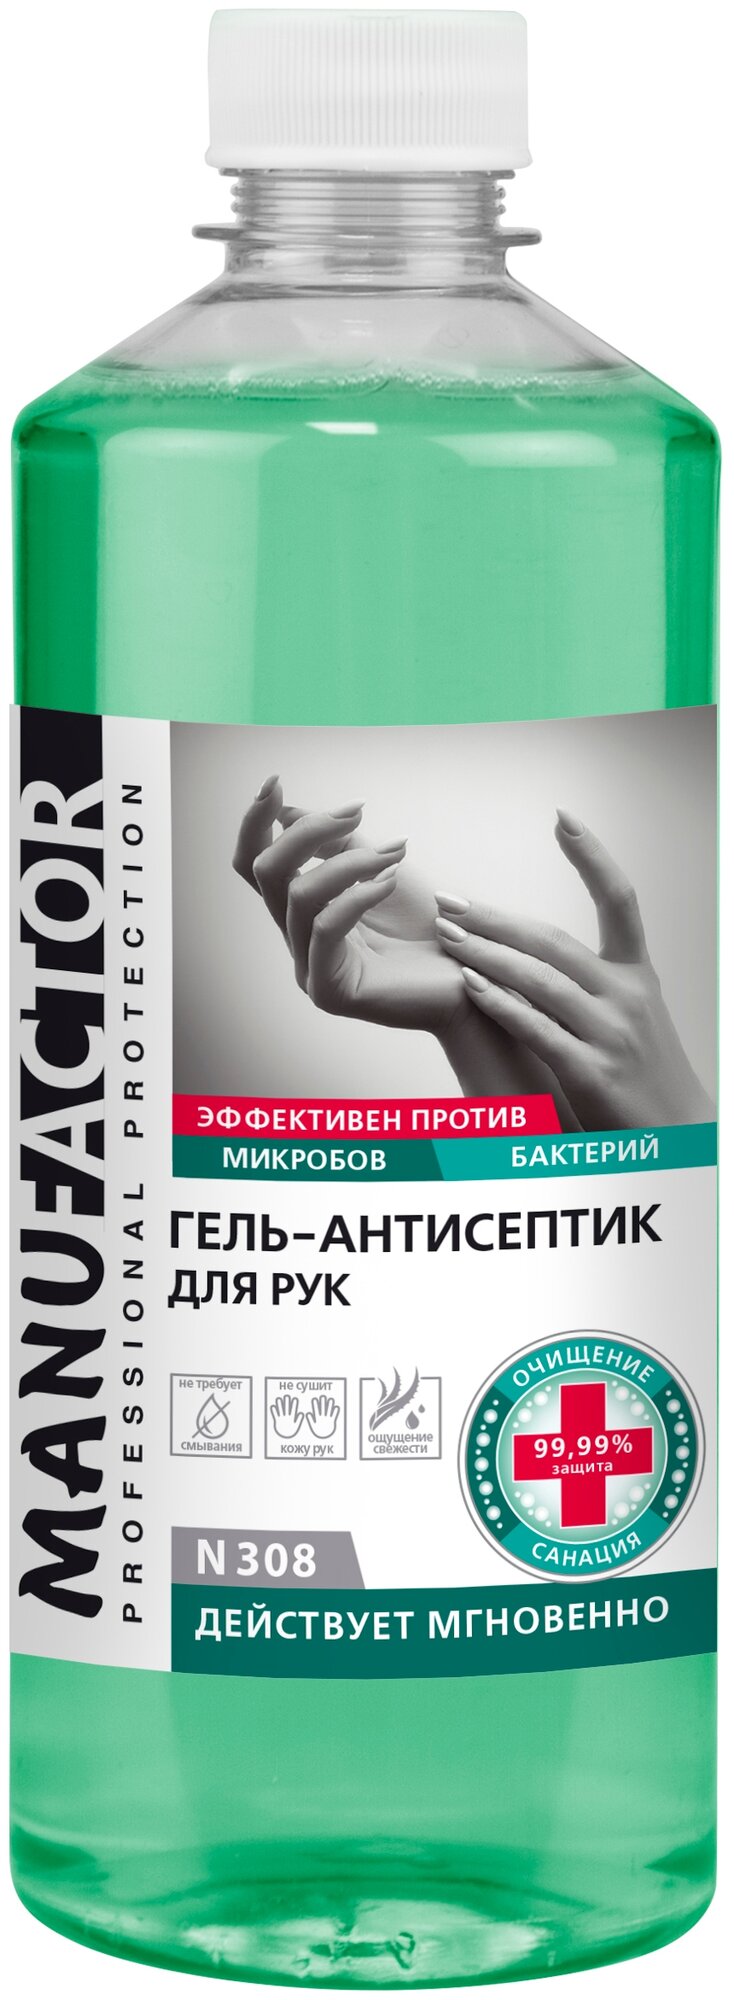 Manufactor Спиртовой гель-антисептик для рук №308